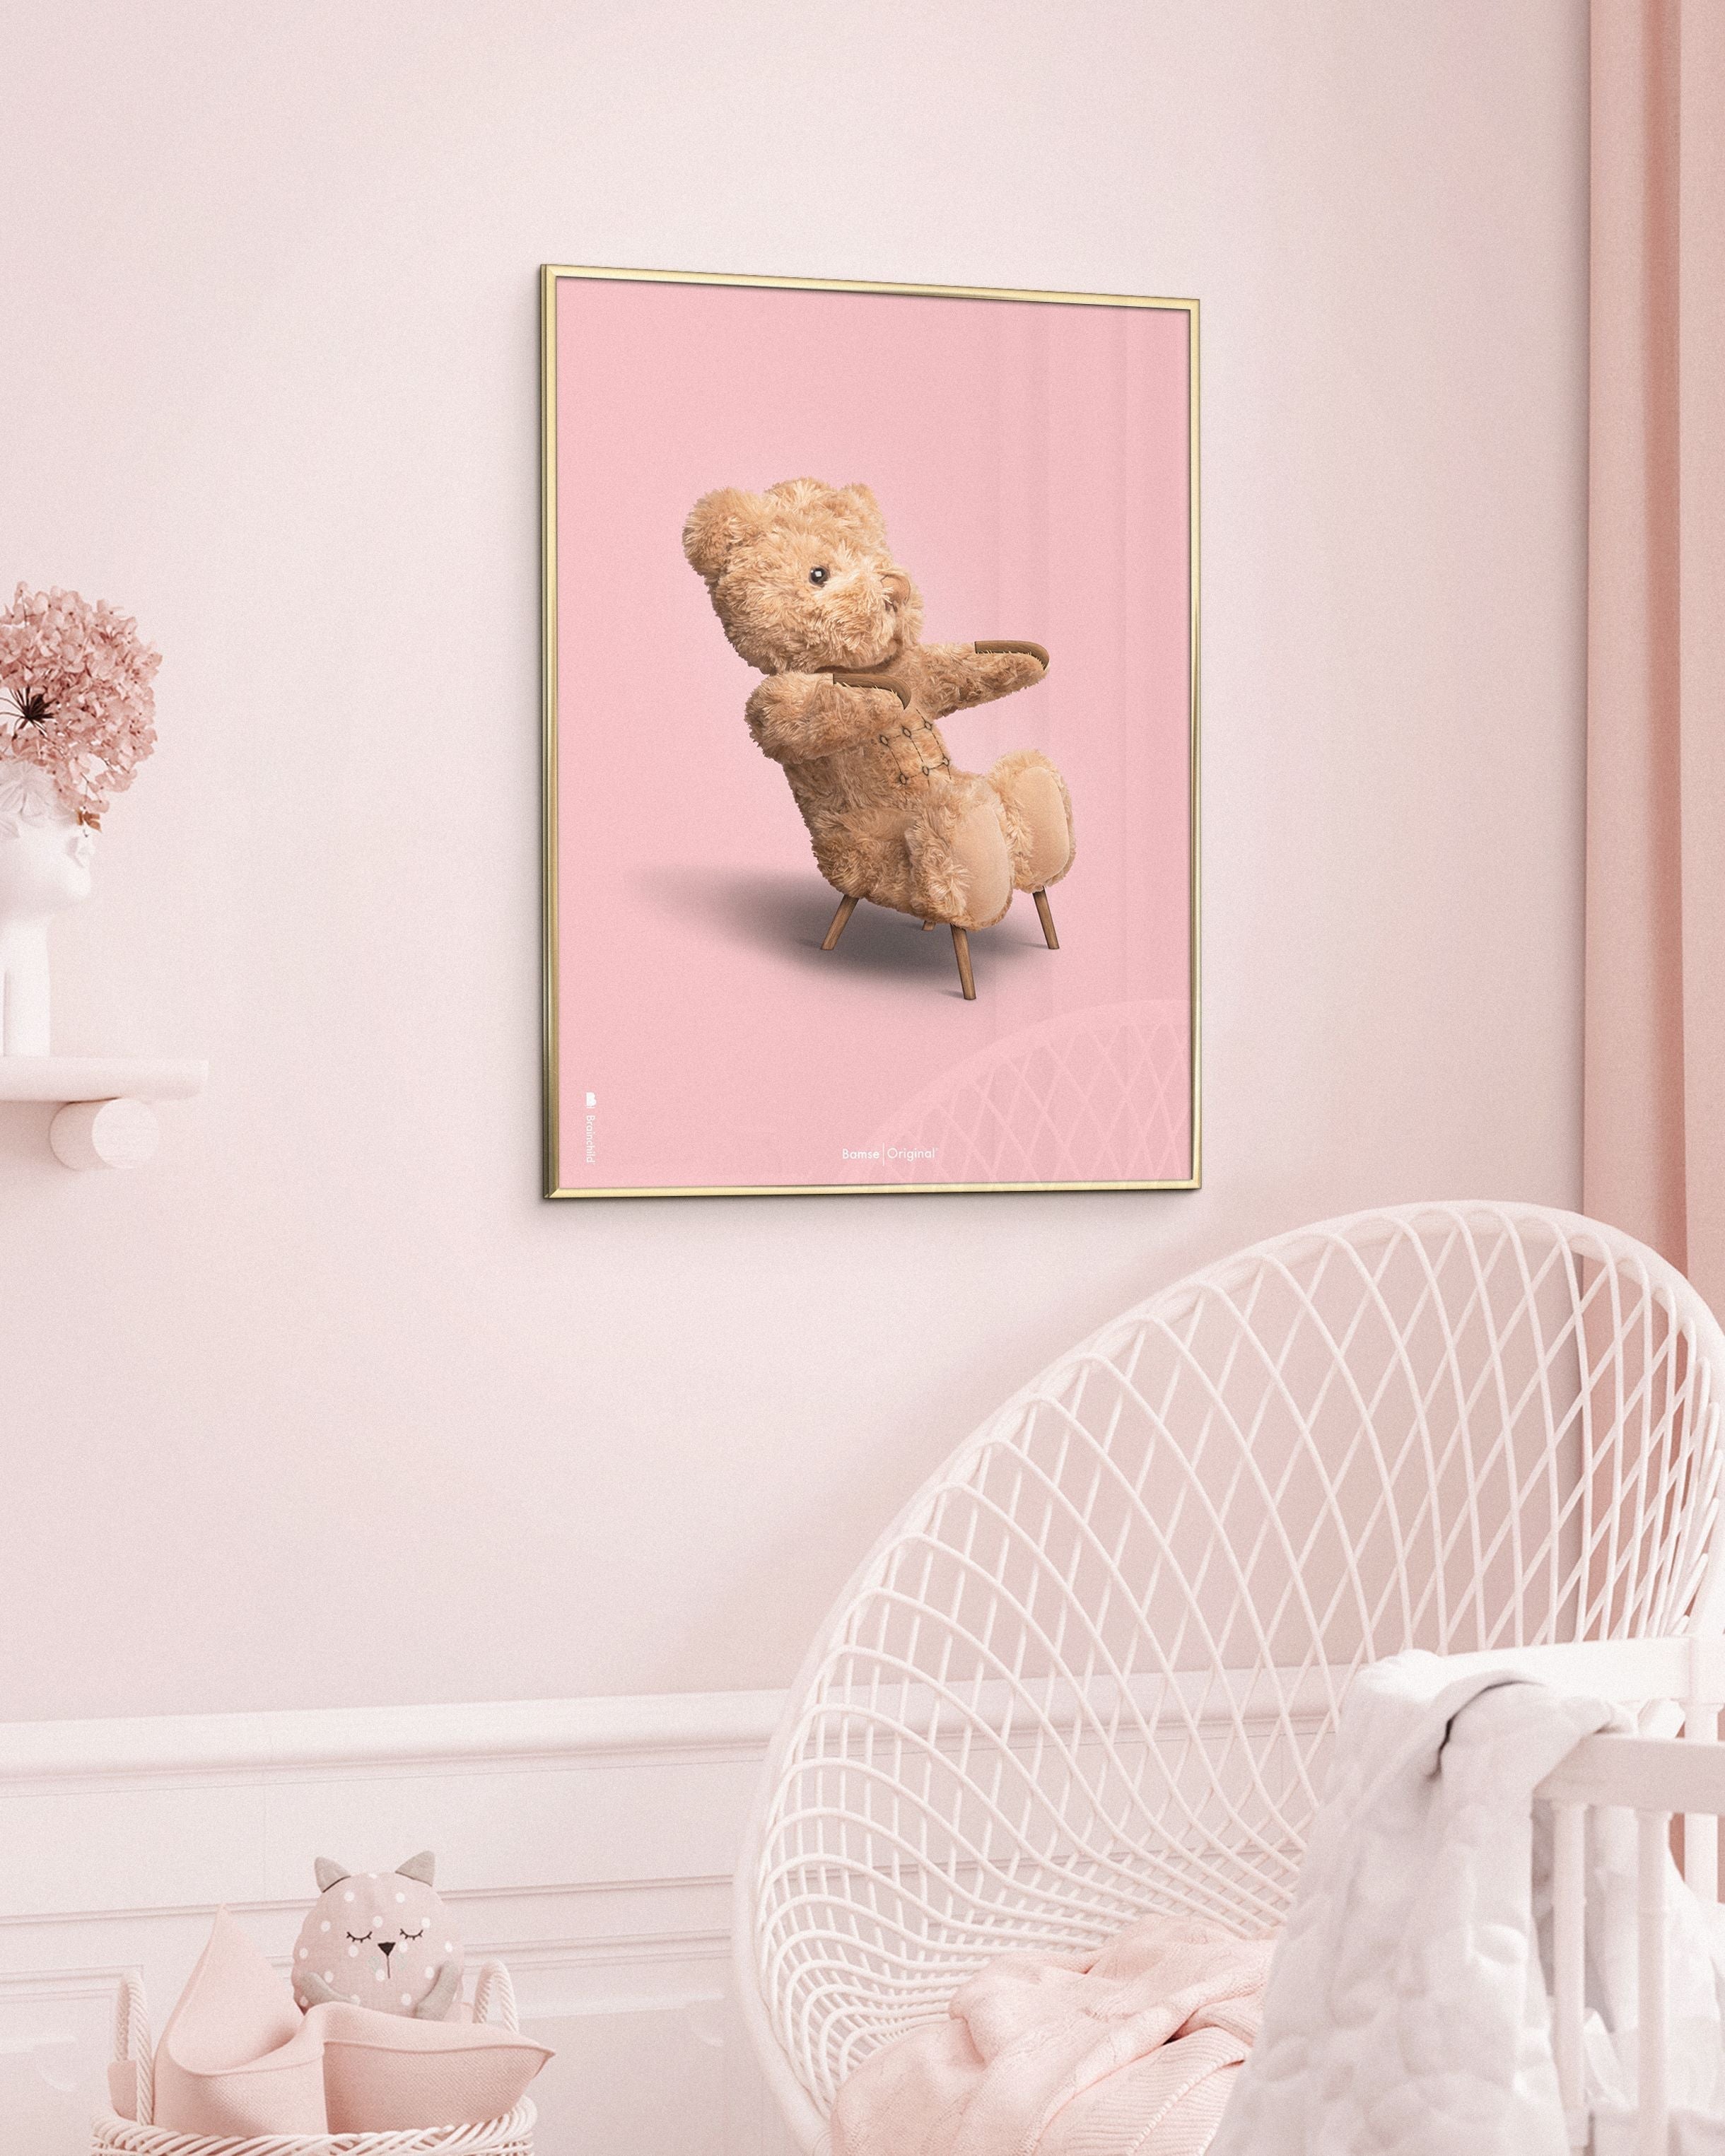 Brainchild Teddybär Classic Poster Frame aus schwarz lackiertem Holz 50x70 cm, rosa Hintergrund